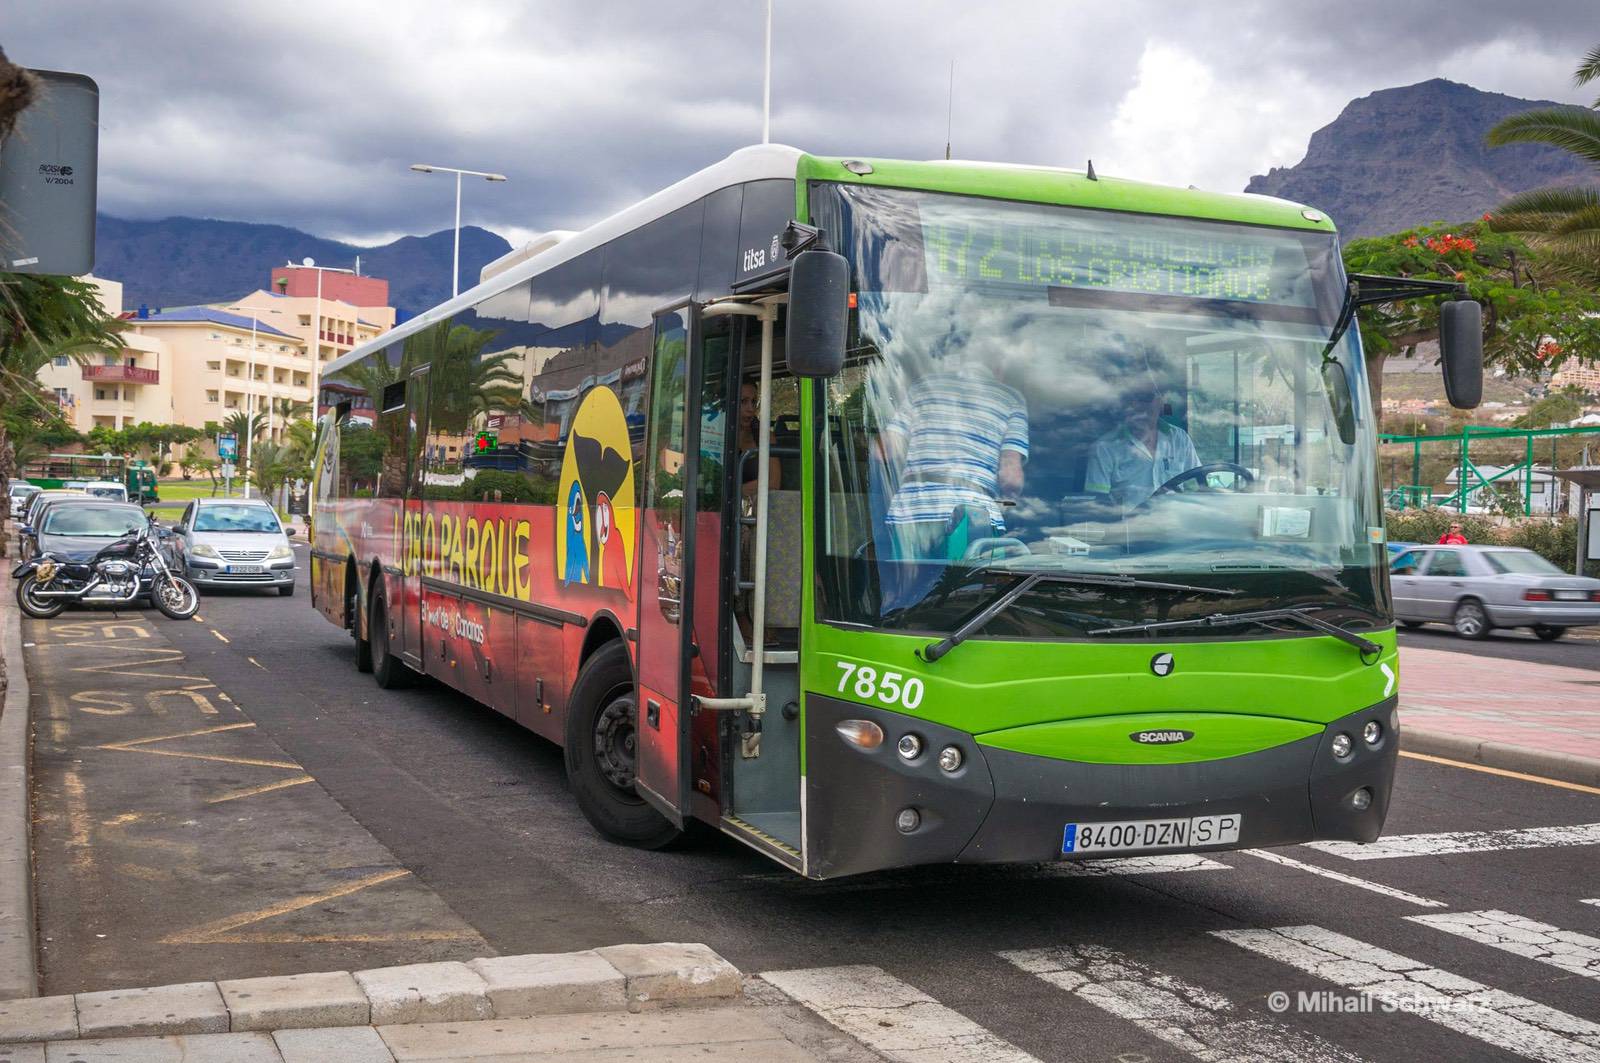 Public transport in Tenerife